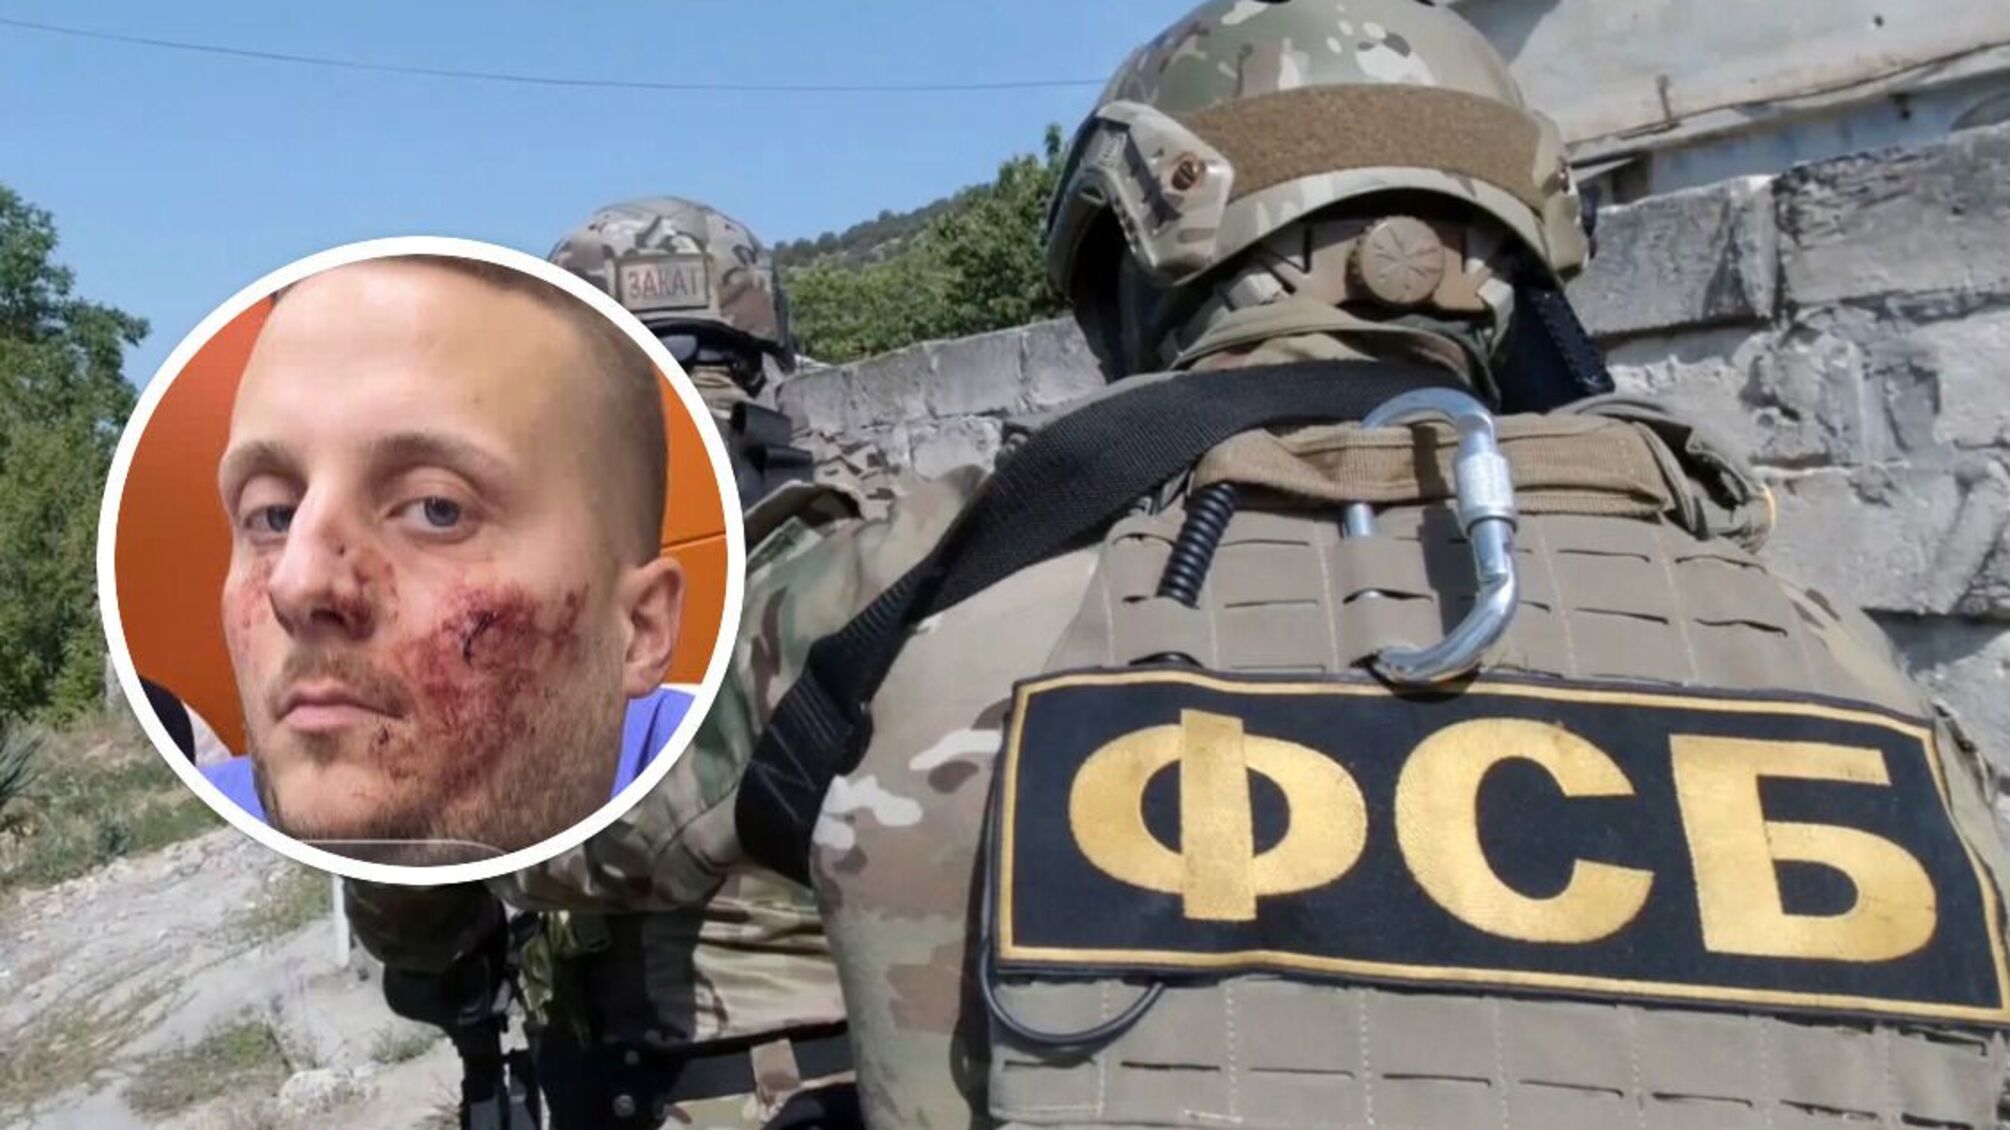 В Турции произошло нападение на спецагента рф Боке: говорил, что Буча - постановка, и врал о Донбассе